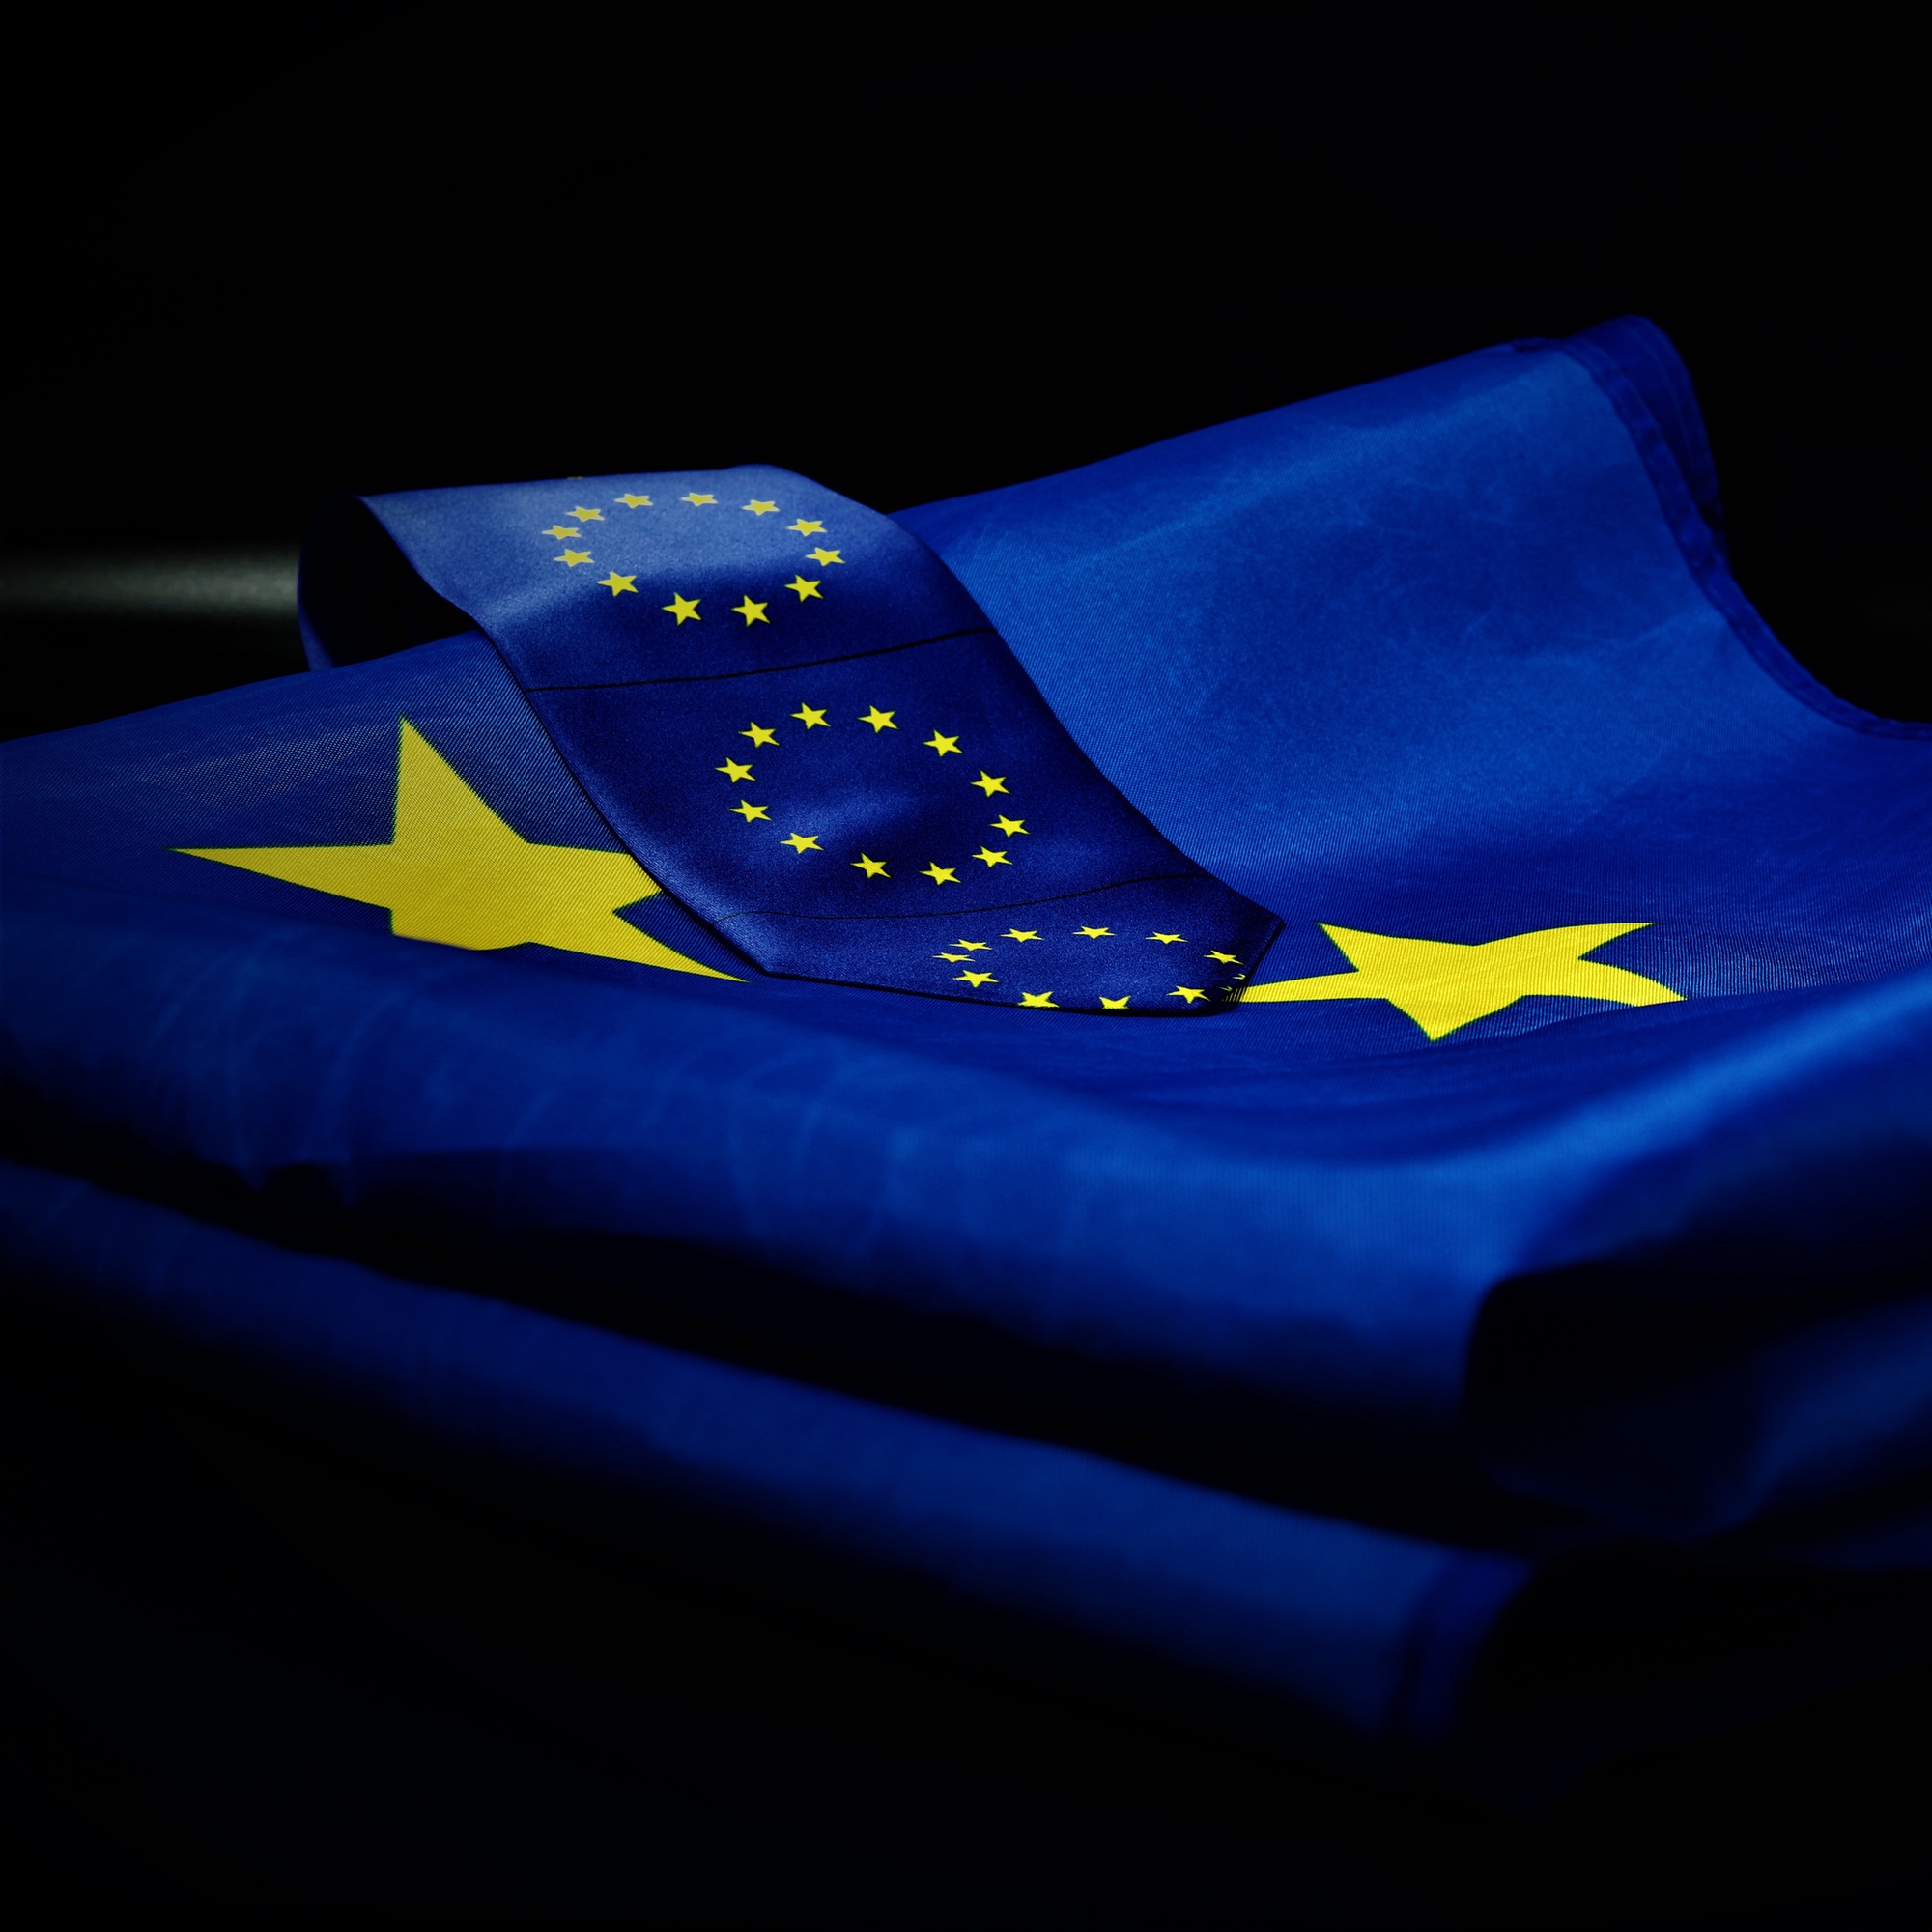 Foto: Gefaltete Flagge der Europäischen Union (EU)